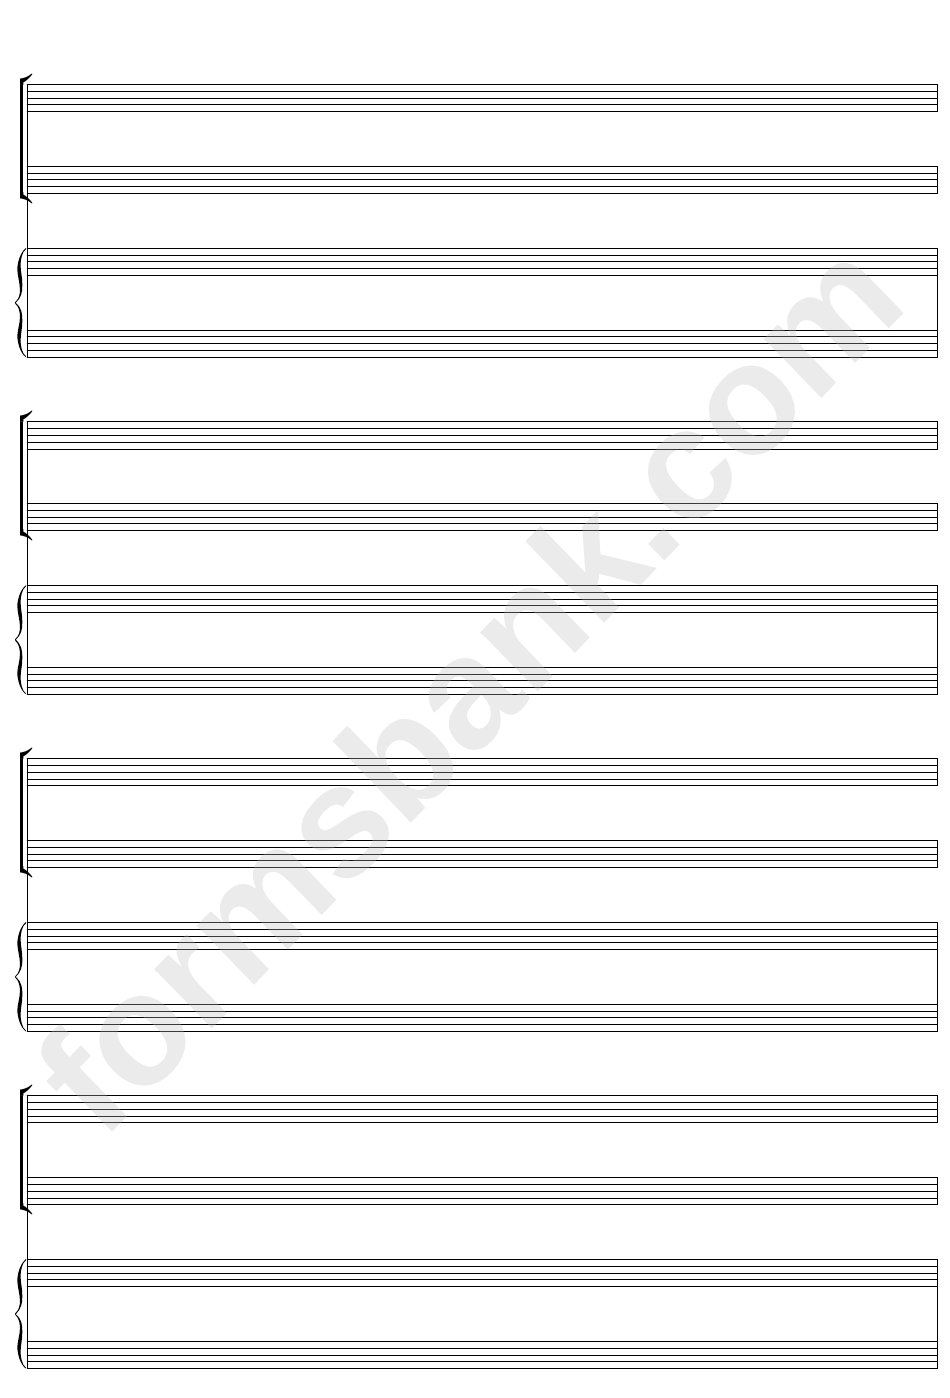 Keyboard + Two, Blank Clefs (A4 Portrait) Blank Sheet Music